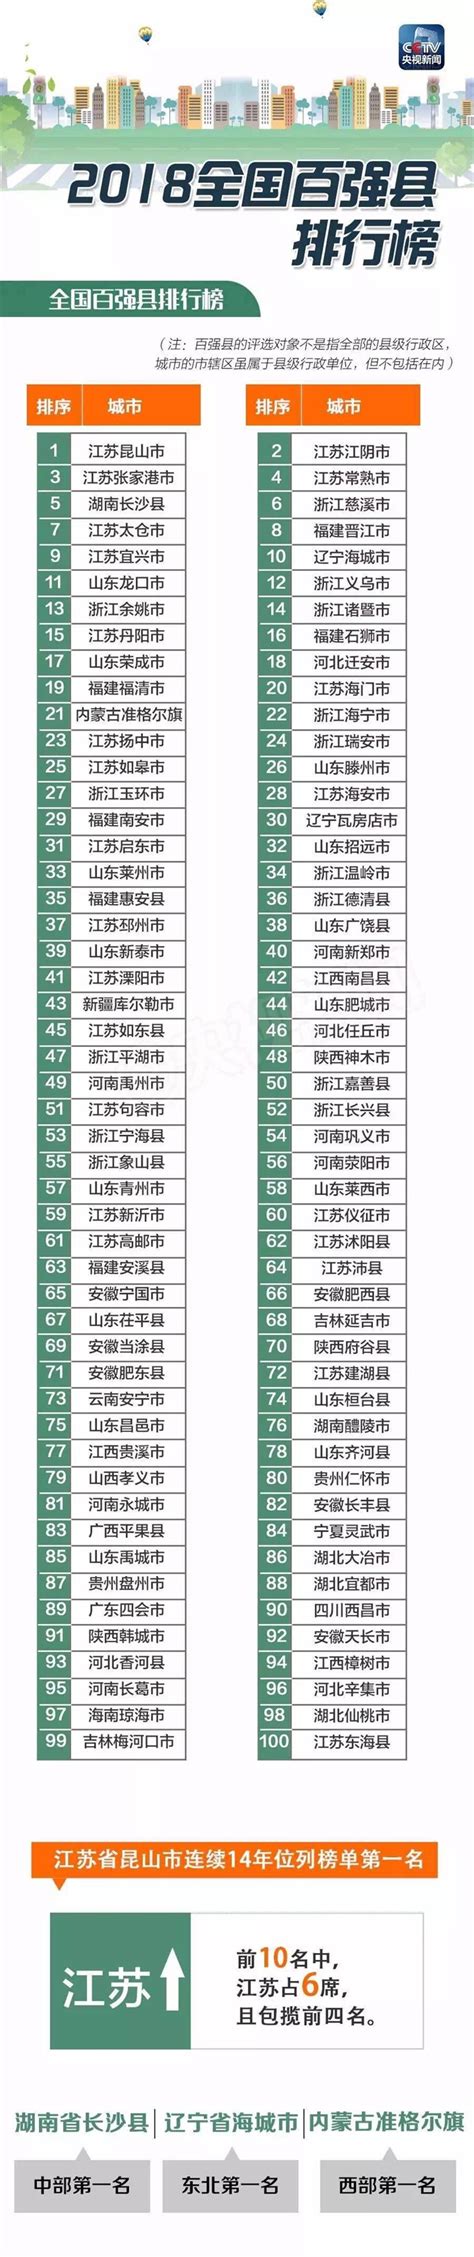 2018全国百强县排行榜名单_特色小镇 - 前瞻产业研究院